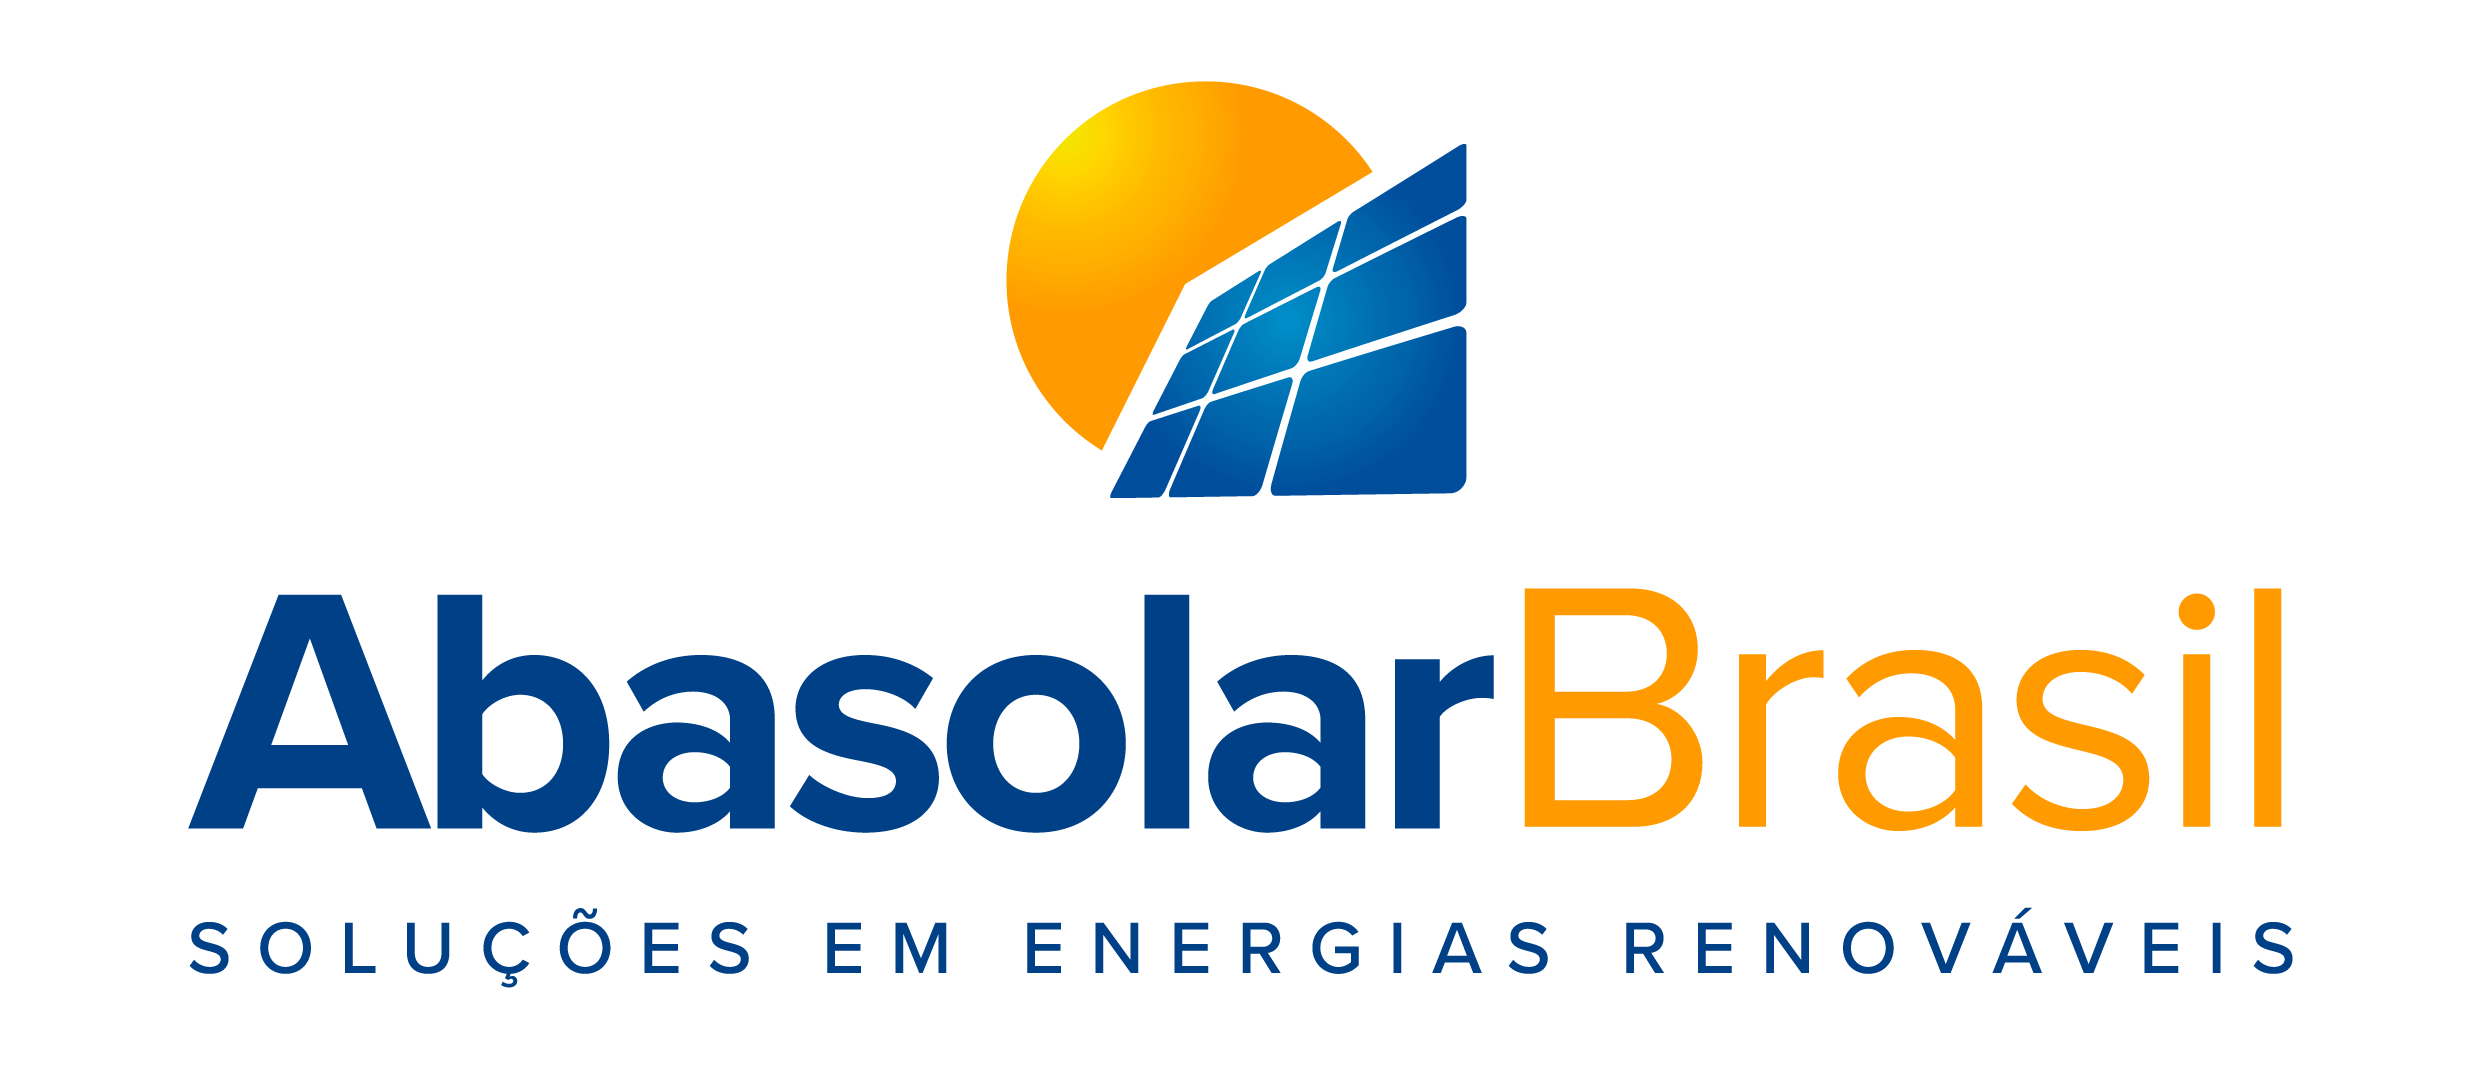 abasolar-brasil